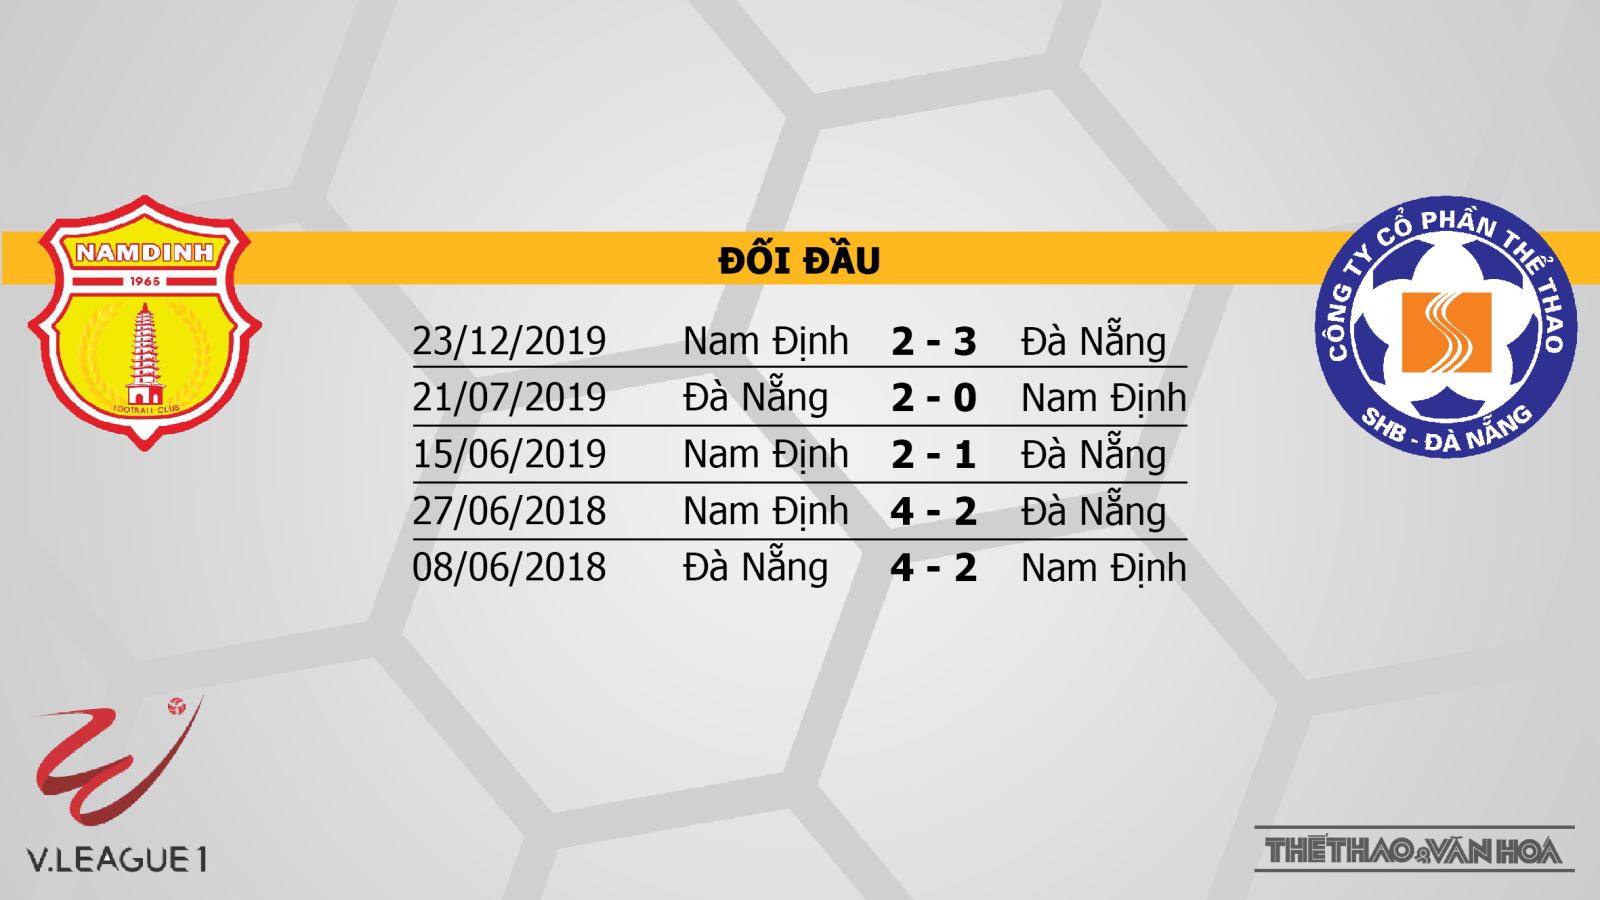 Nam Định vs SHB Đà Nẵng, kèo bóng đá Nam Định vs SHB Đà Nẵng, Nam Định, Đà Nẵng, trực tiếp bóng đá, trực tiếp Nam Định vs SHB Đà Nẵng, nhận định bóng đá bóng đá